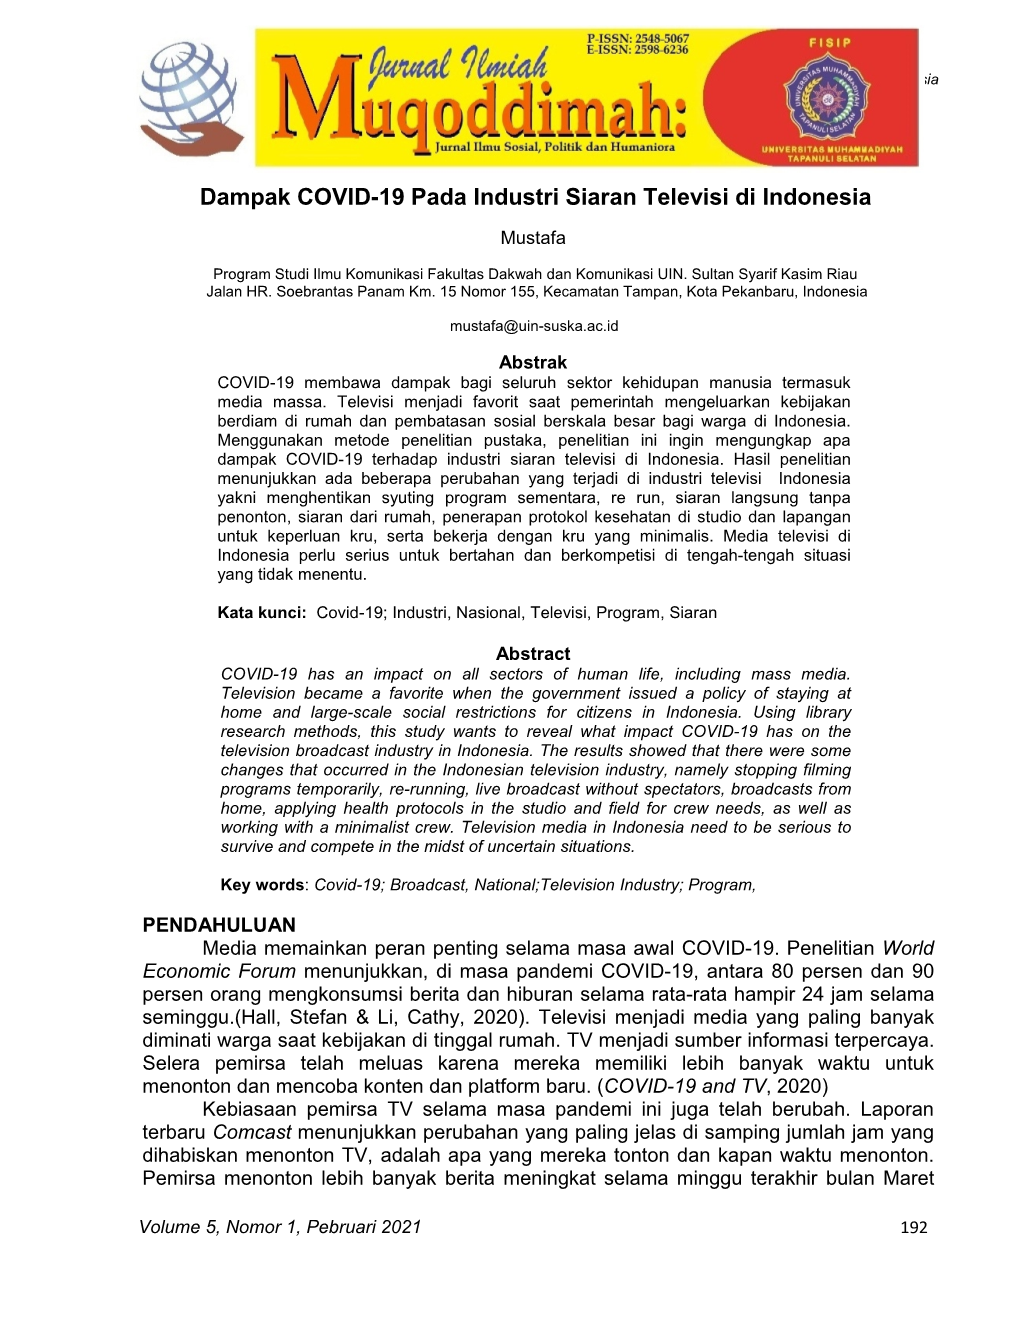 Dampak COVID-19 Pada Industri Siaran Televisi Di Indonesia